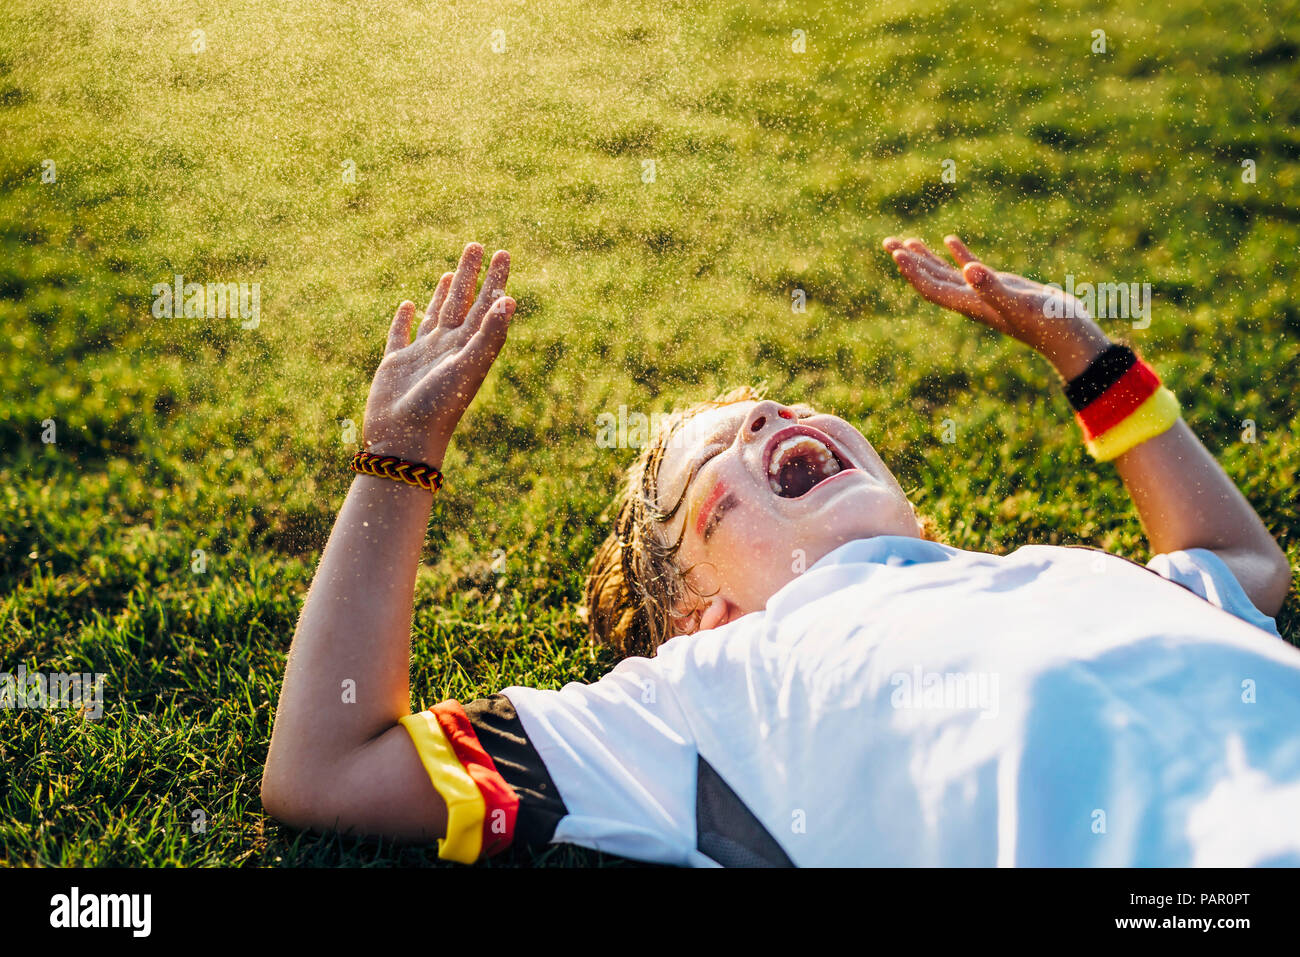 Garçon en allemand soccer shirt allongé sur l'herbe, rire et crier Banque D'Images